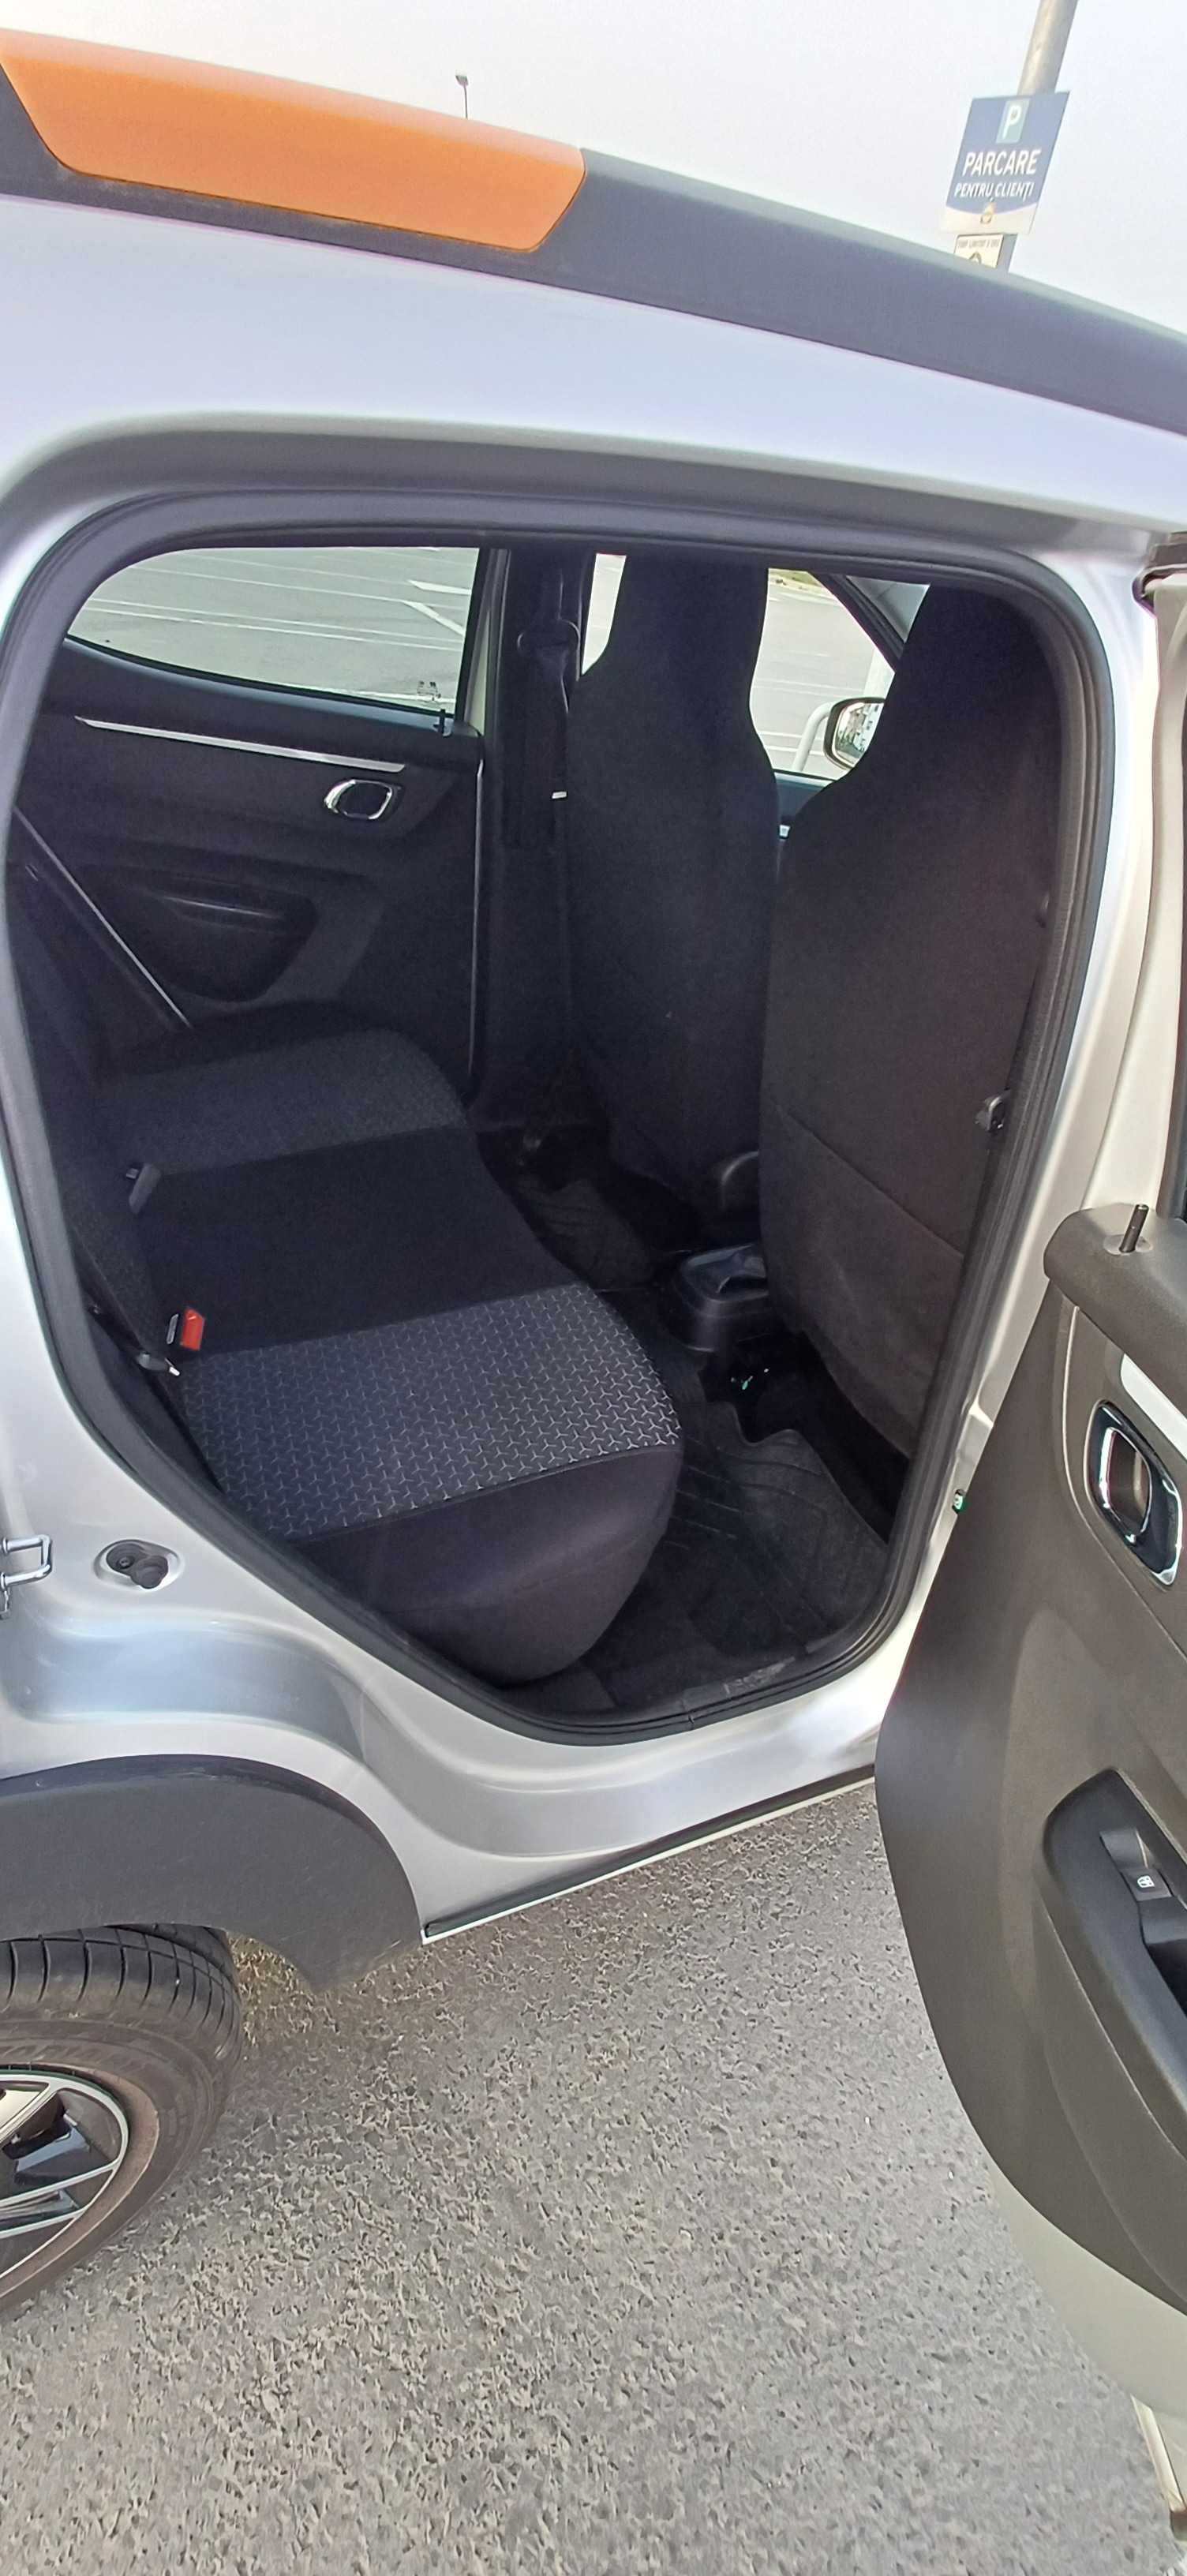 Dacia Spring Confort Plus (incarcare rapida + navigatie)